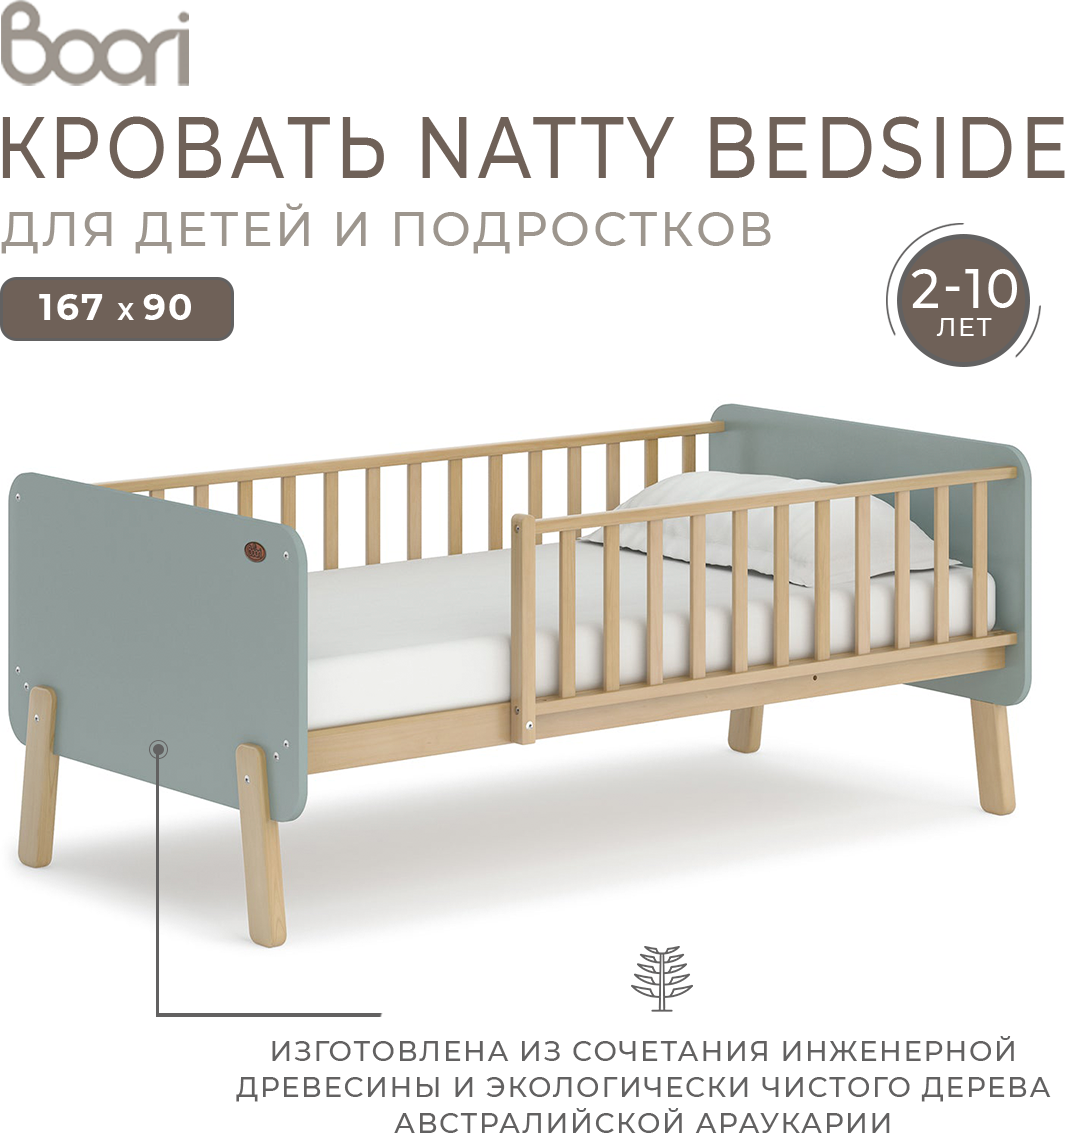 Natty Bedside bed